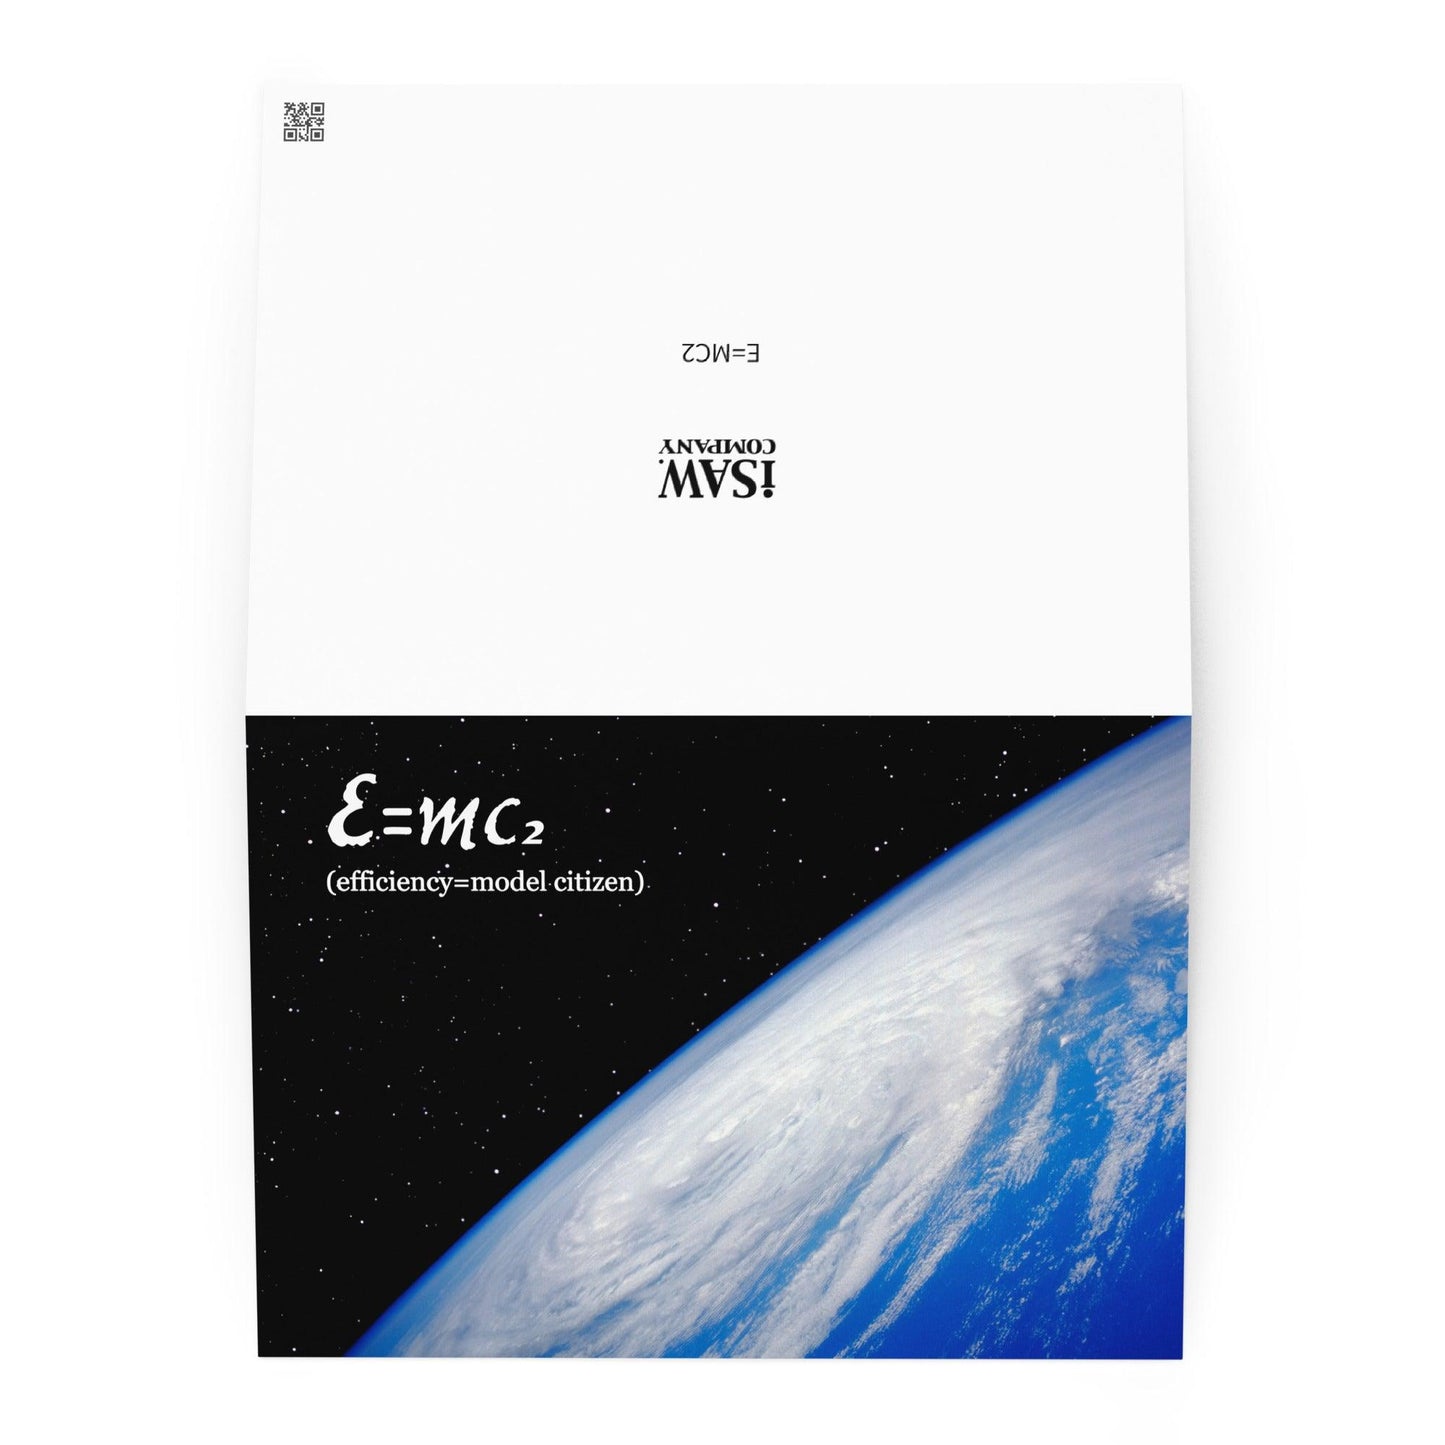 E=MC2 - Note Card - iSAW Company